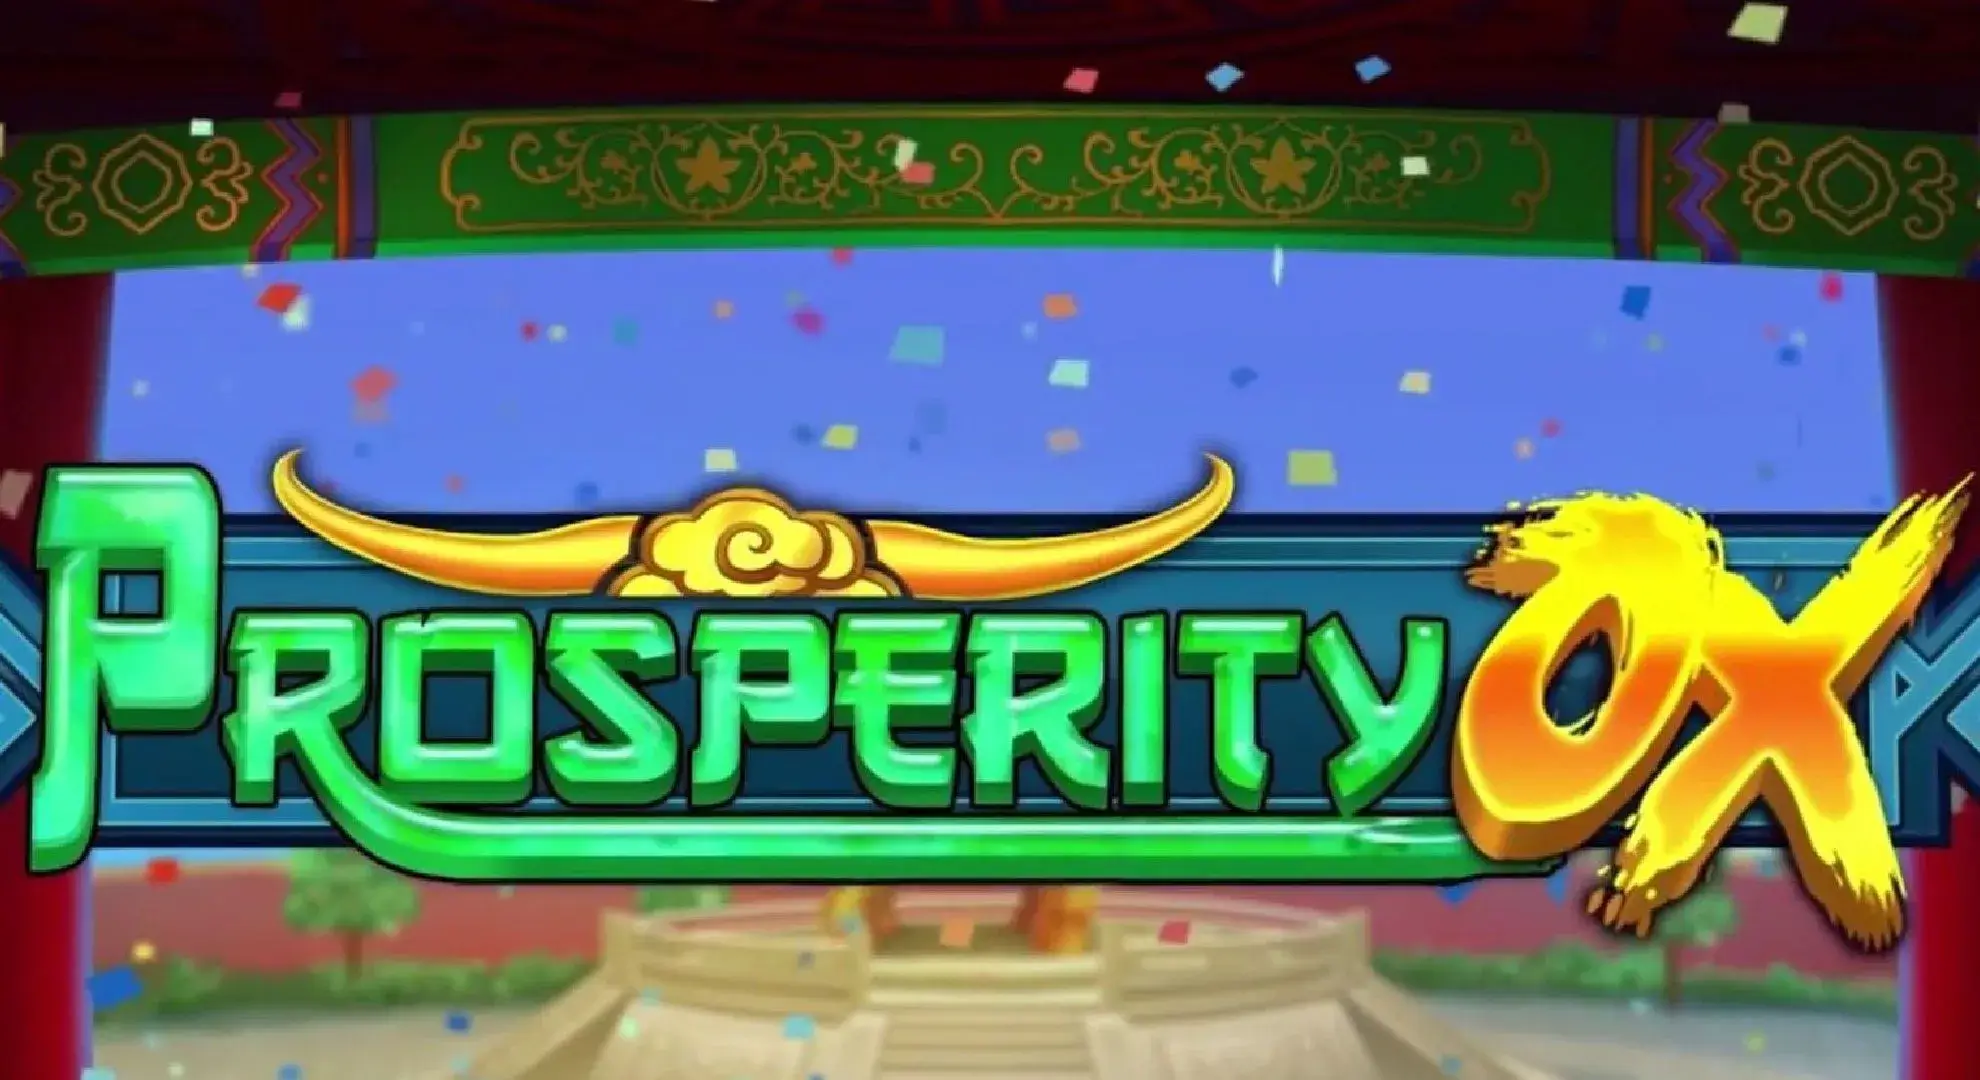 Prosperity ox